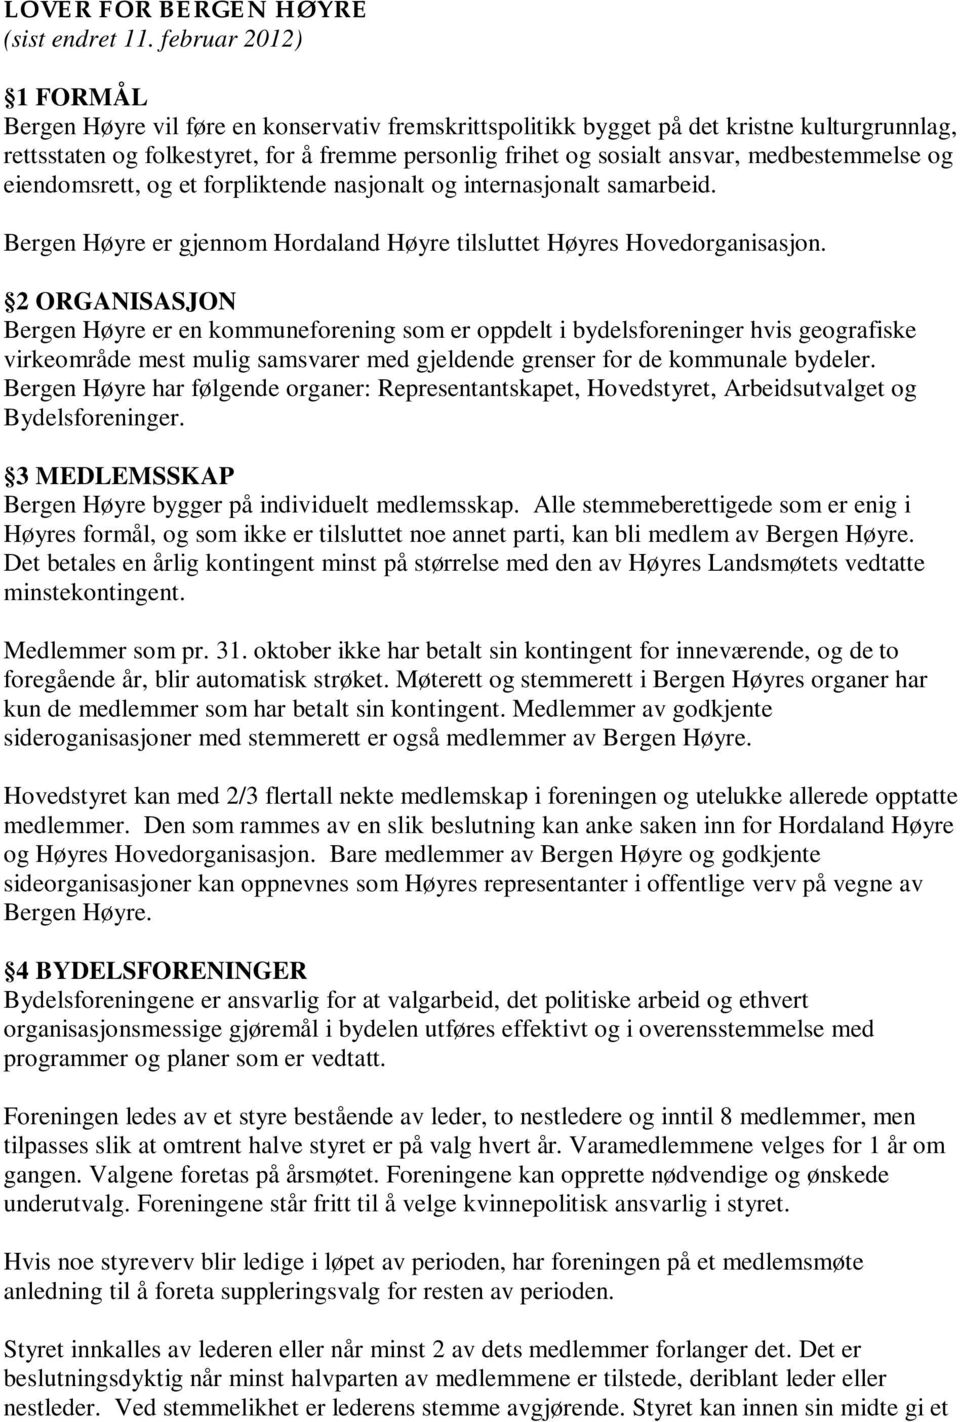 medbestemmelse og eiendomsrett, og et forpliktende nasjonalt og internasjonalt samarbeid. Bergen Høyre er gjennom Hordaland Høyre tilsluttet Høyres Hovedorganisasjon.